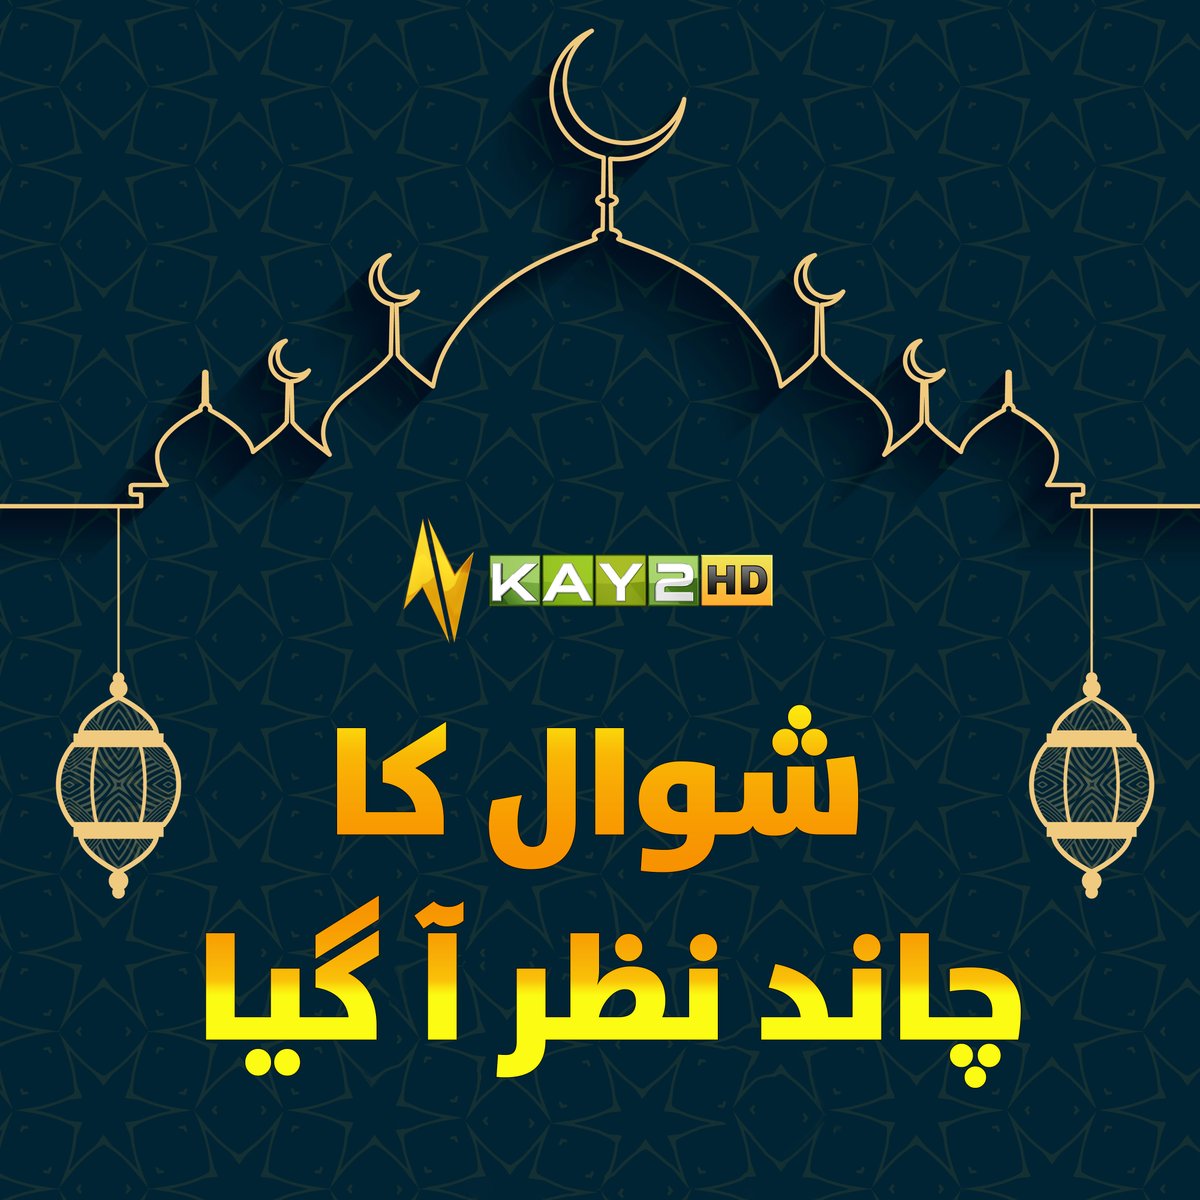 شوال کا چاند نظر آ گیا، عیدالفطر کل ہو گی #عيد_الفطر #Eid2024 #Eidulfitr2024 #EidMubara #Kay2TV